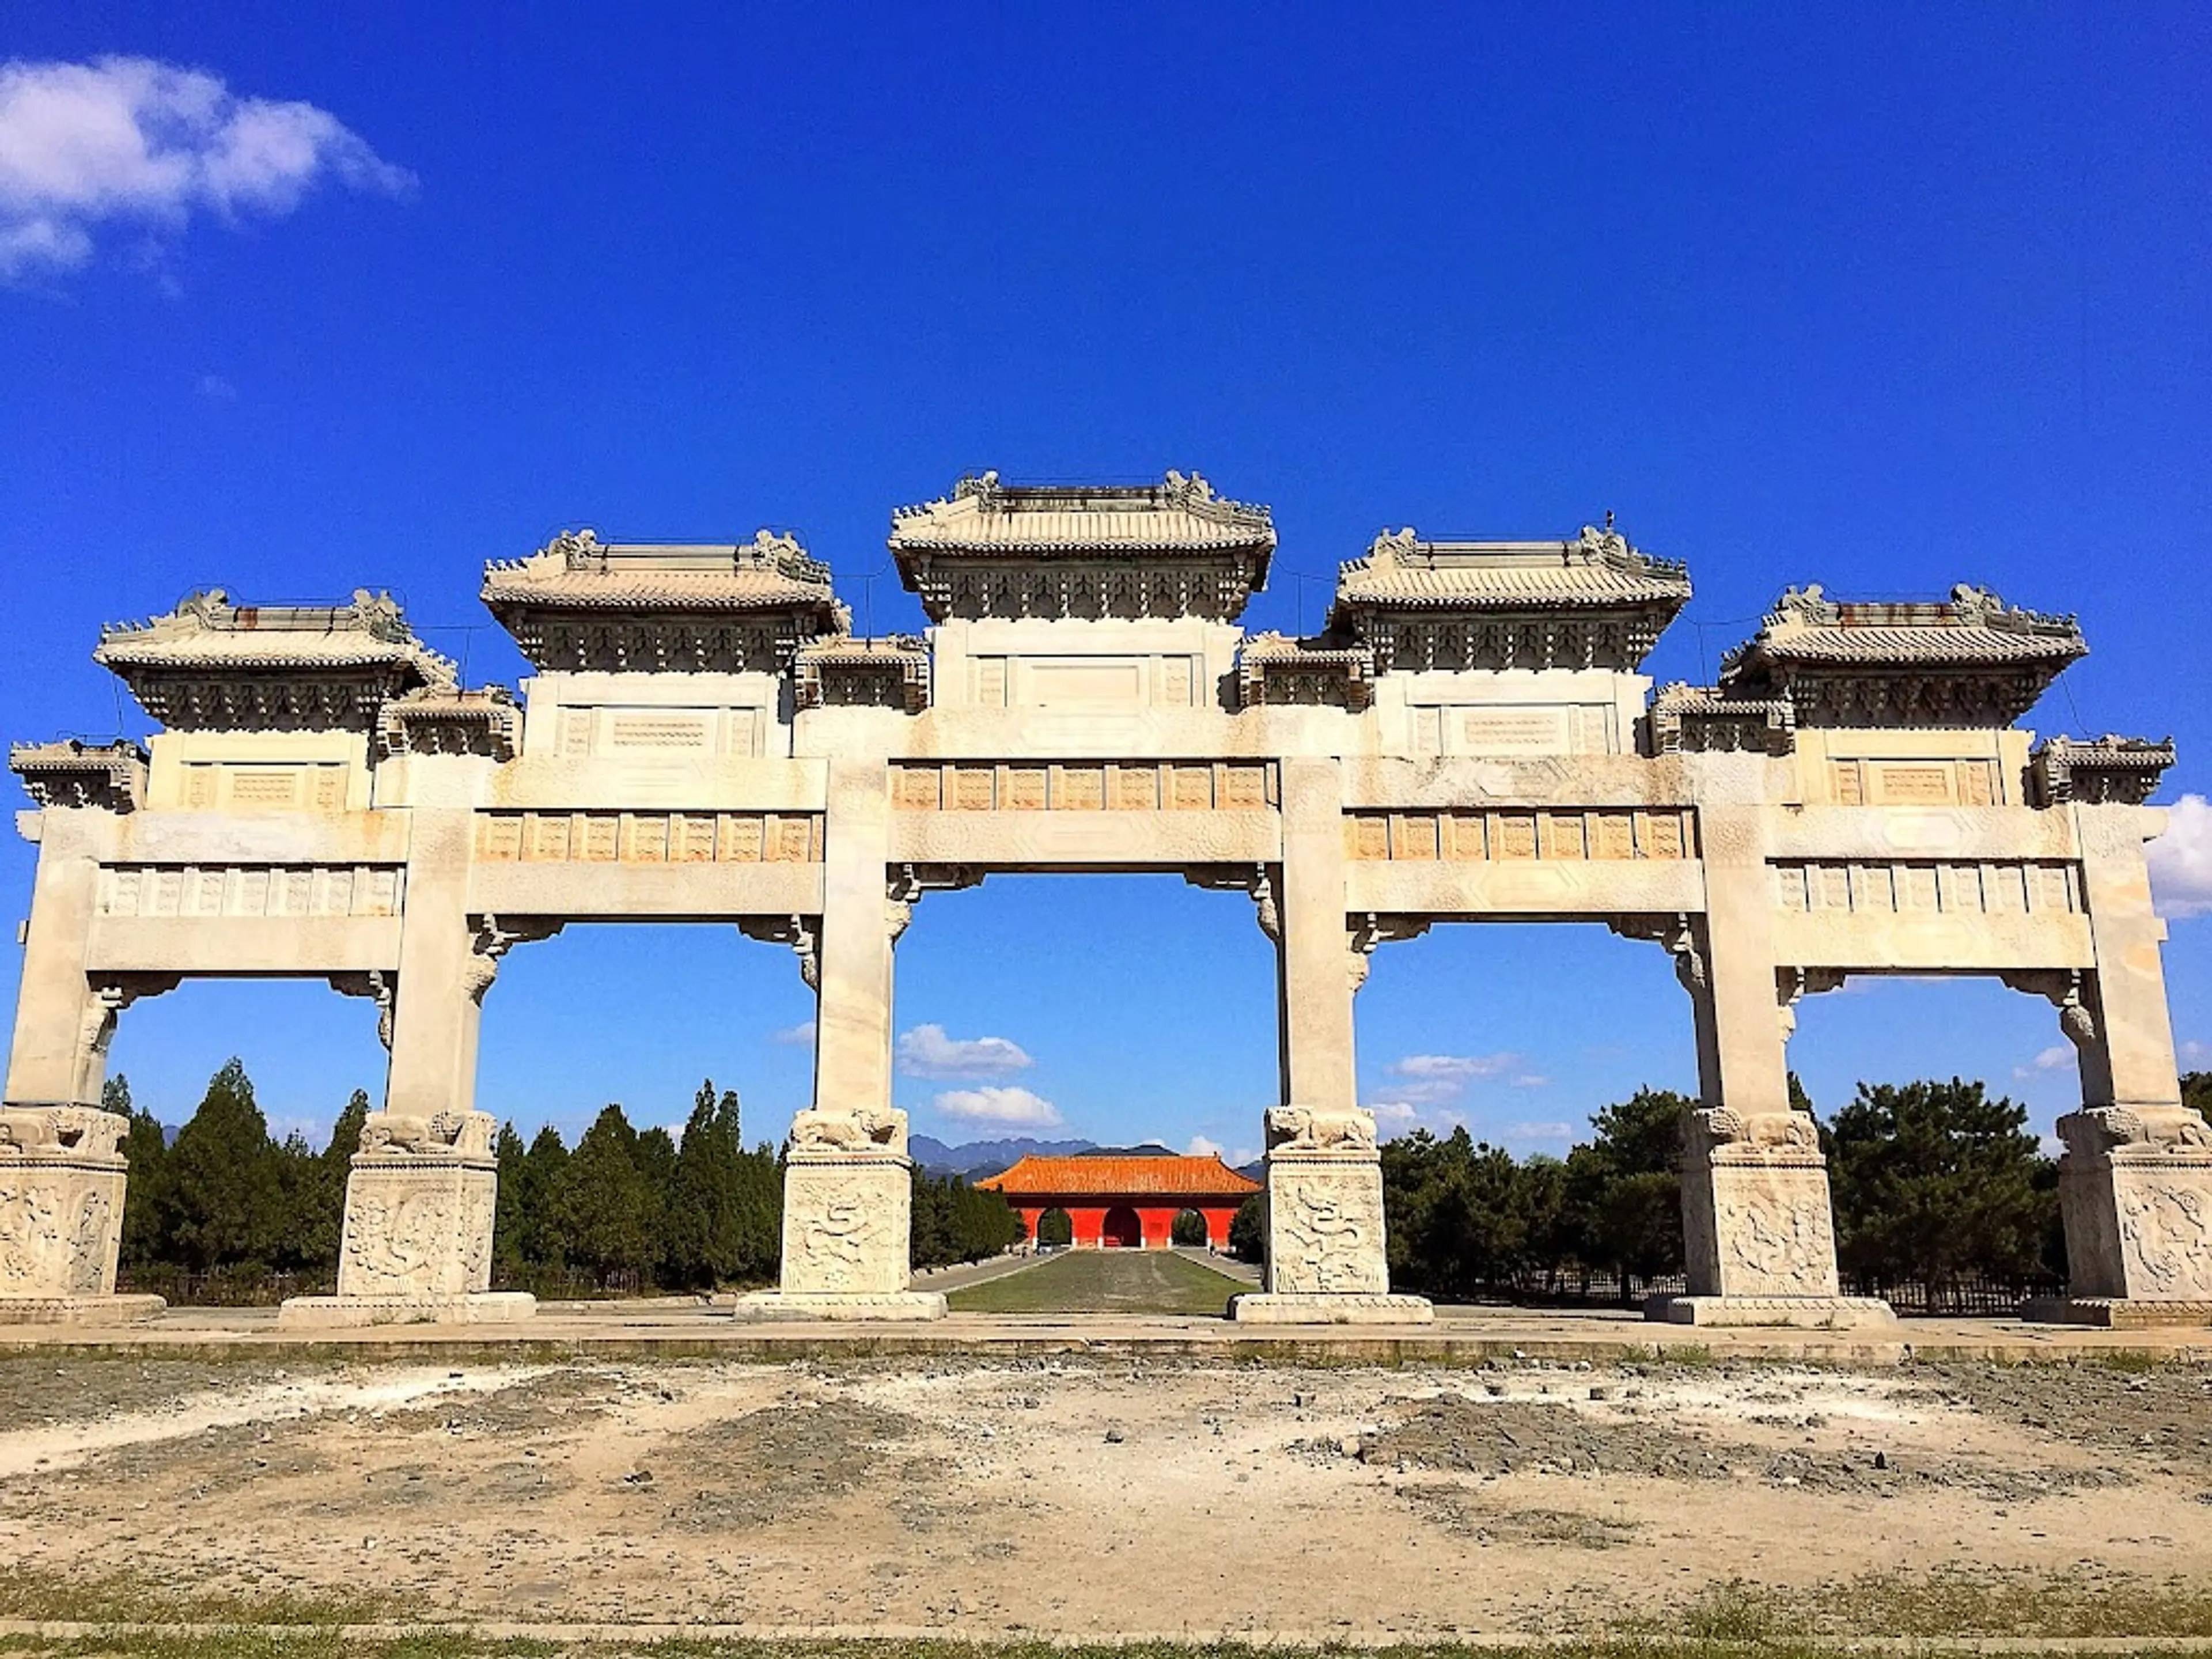 Eastern Qing Tombs